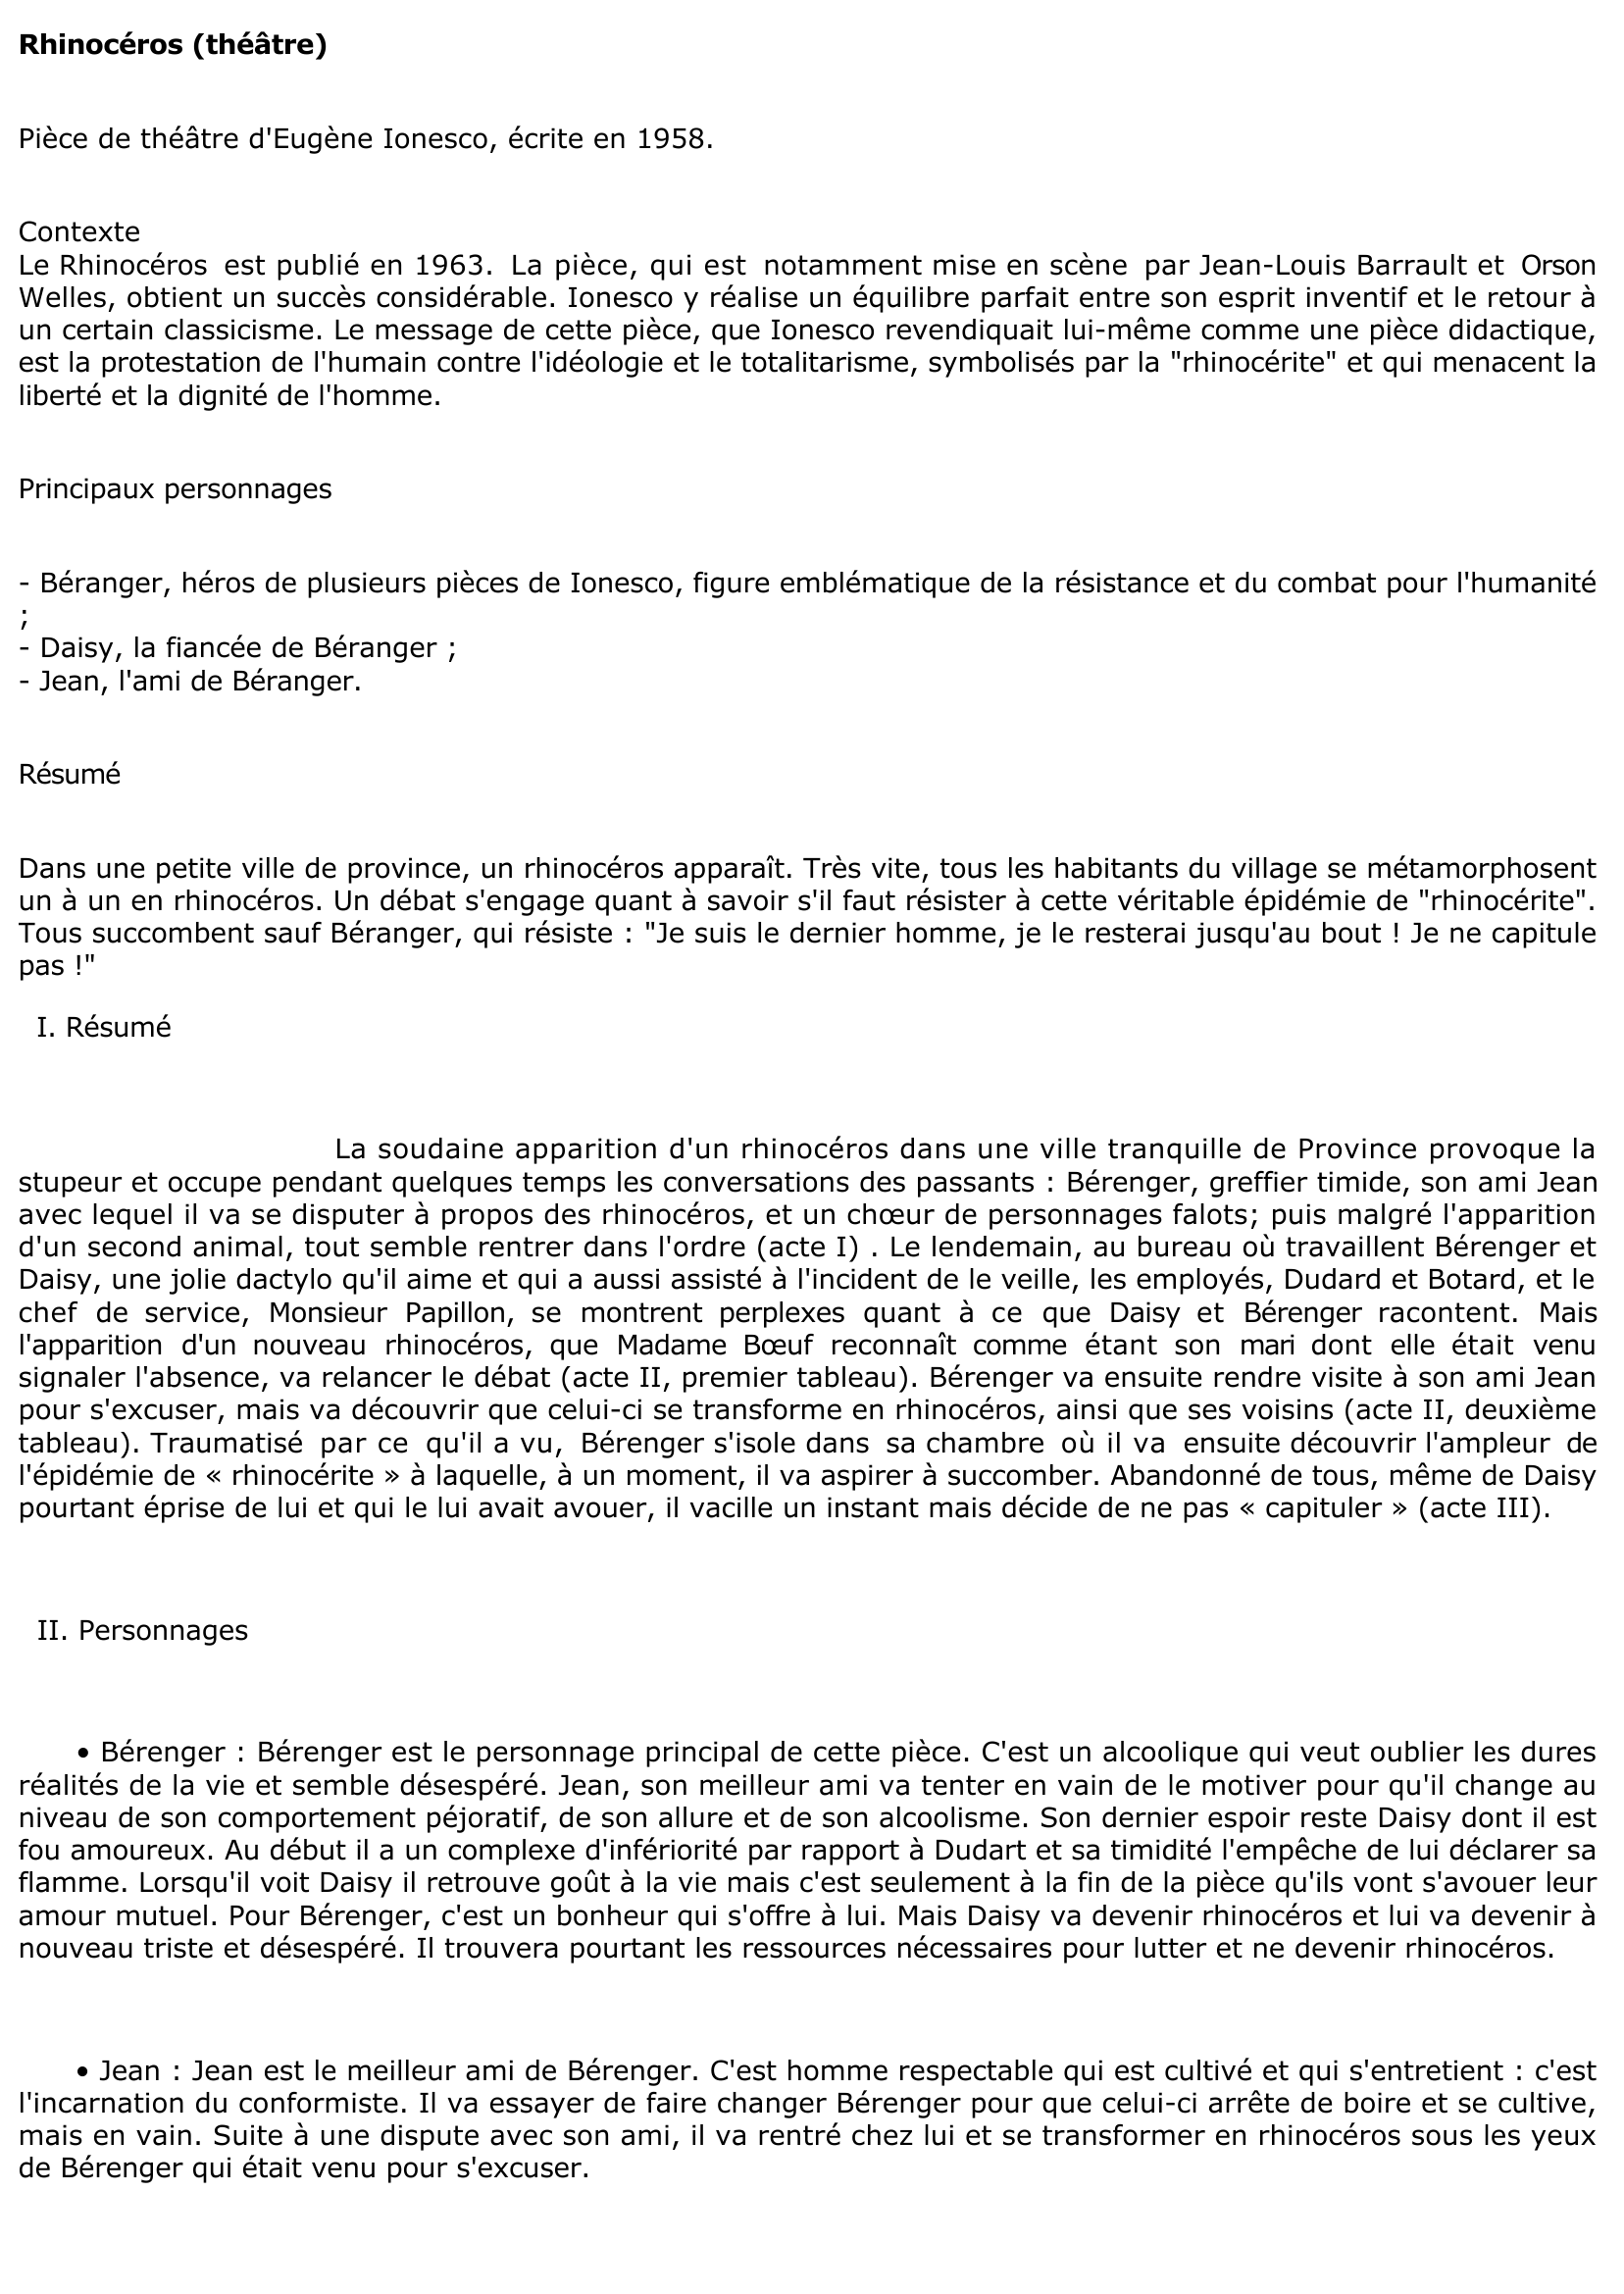 Prévisualisation du document Rhinocéros d'Eugène Ionesco